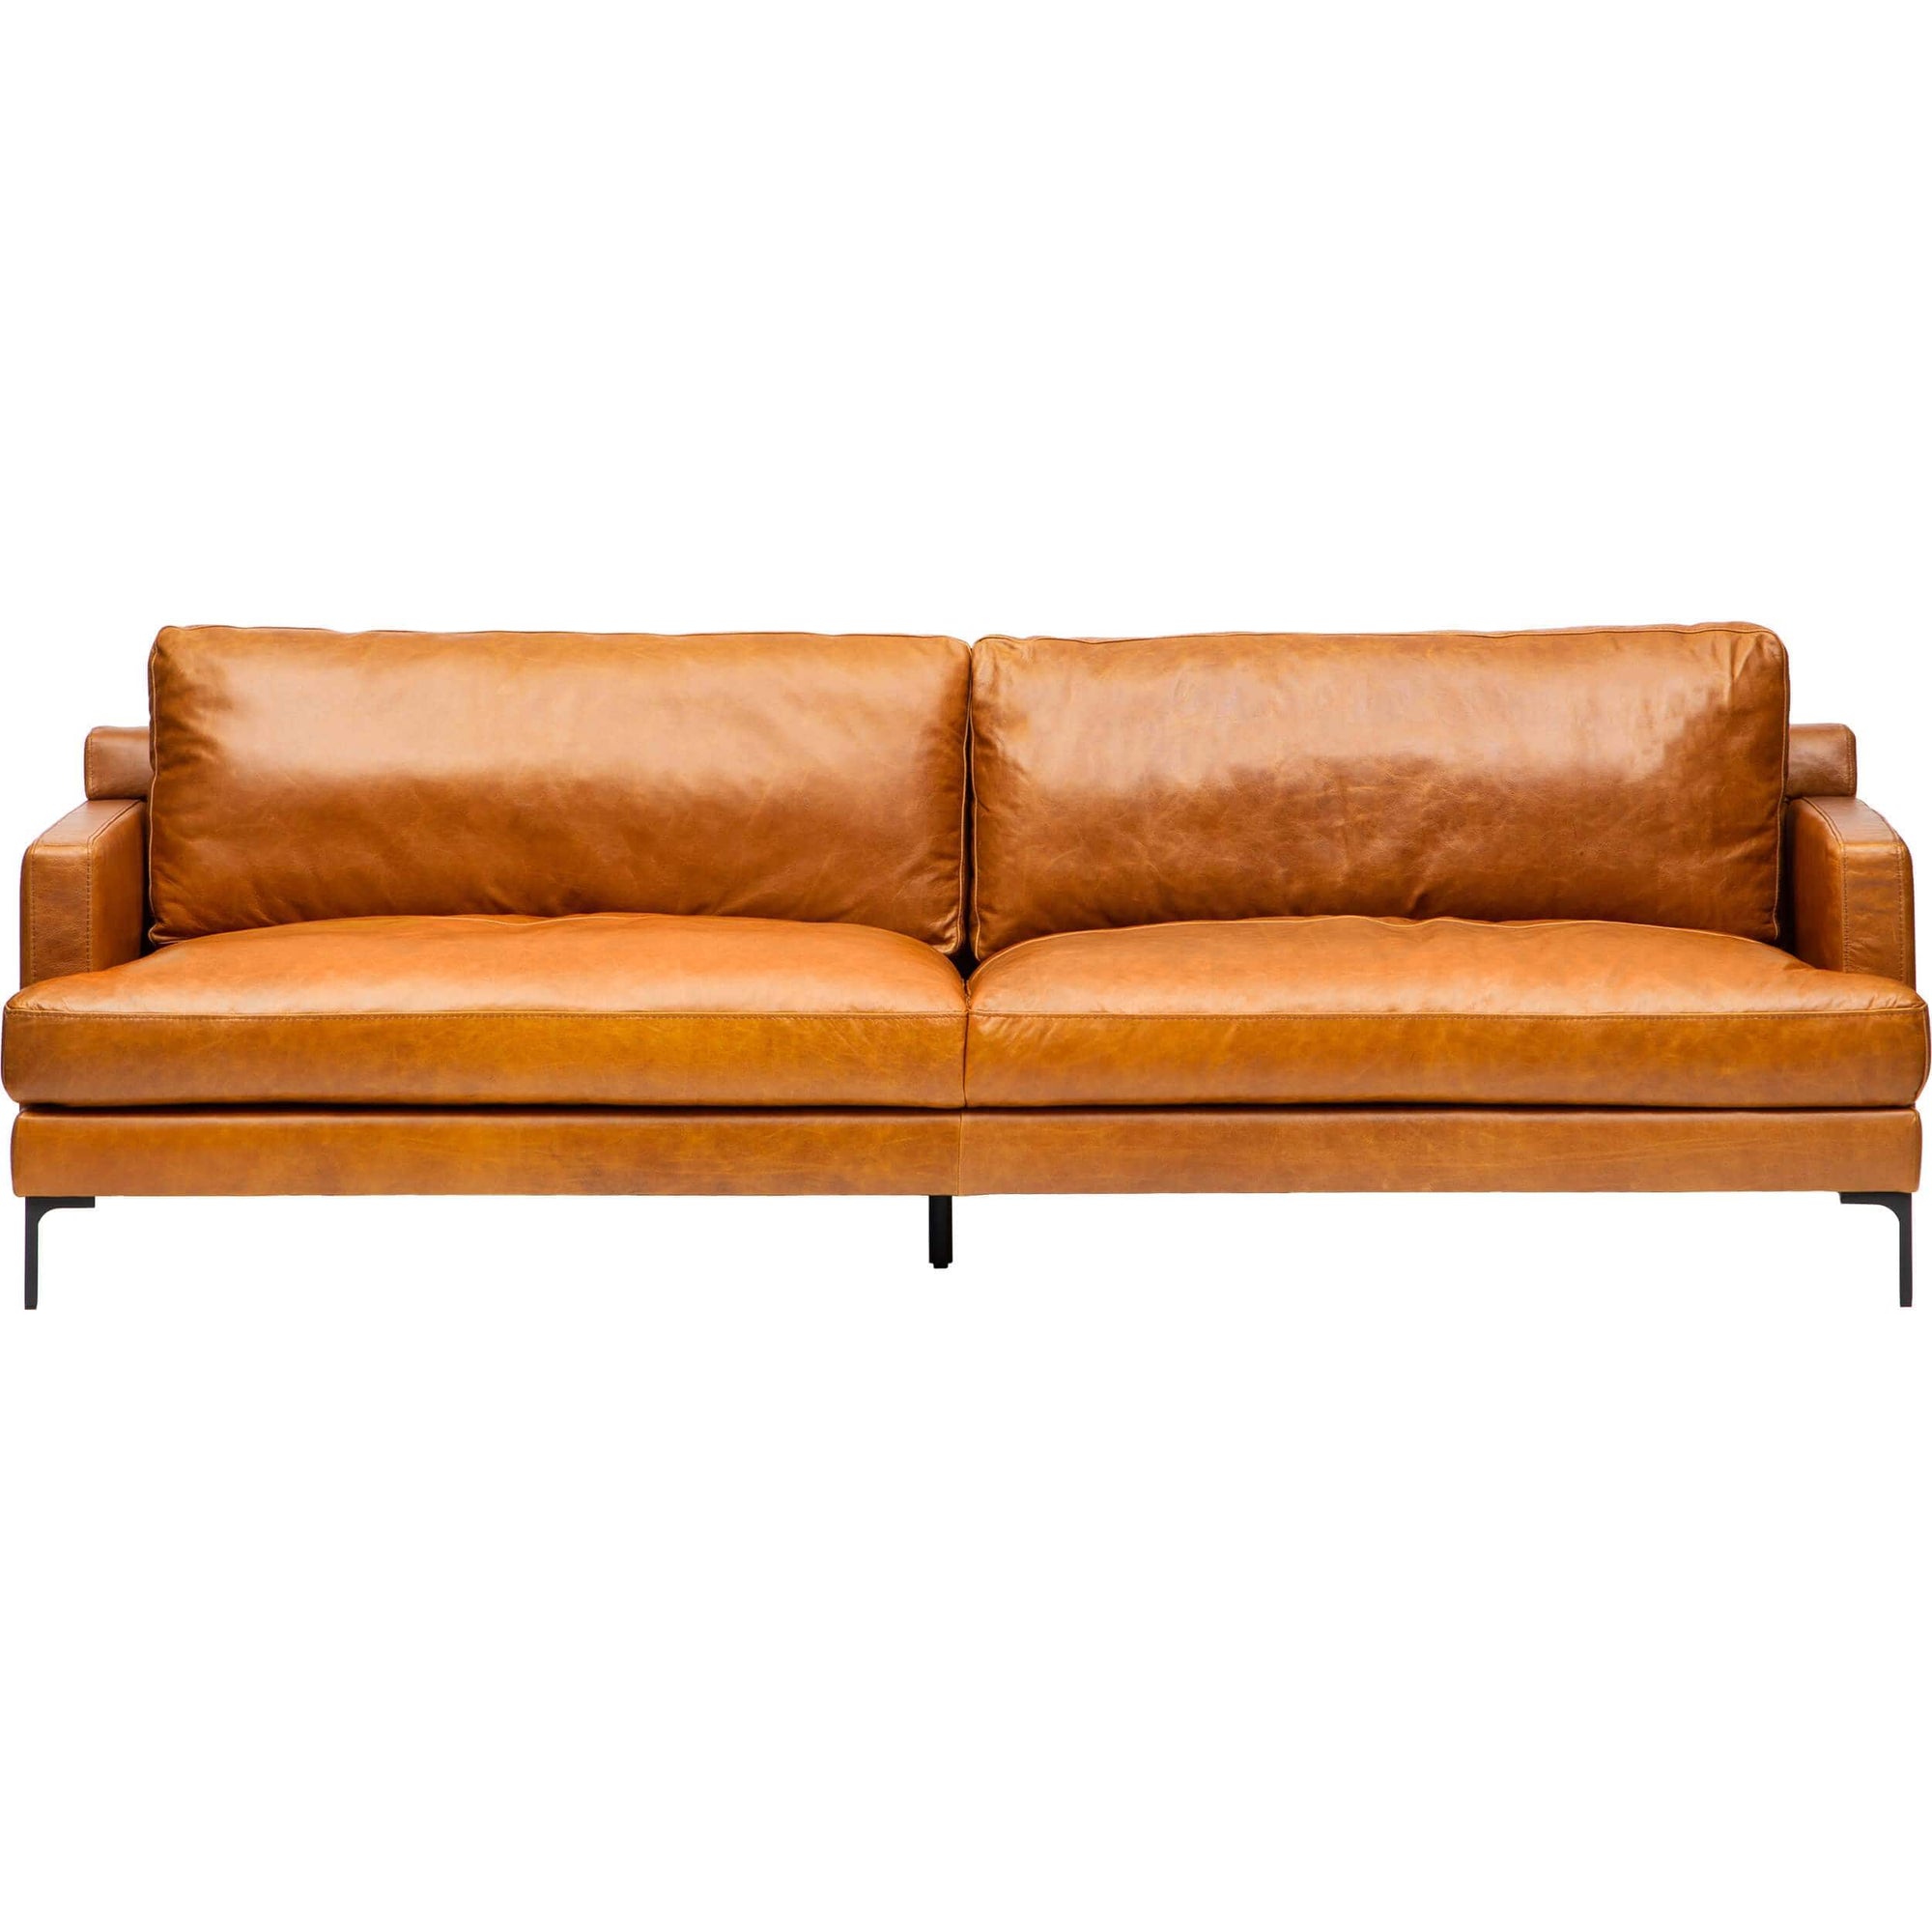 Ansel Leather Sofa, Buffalo Camel – High Fashion Home